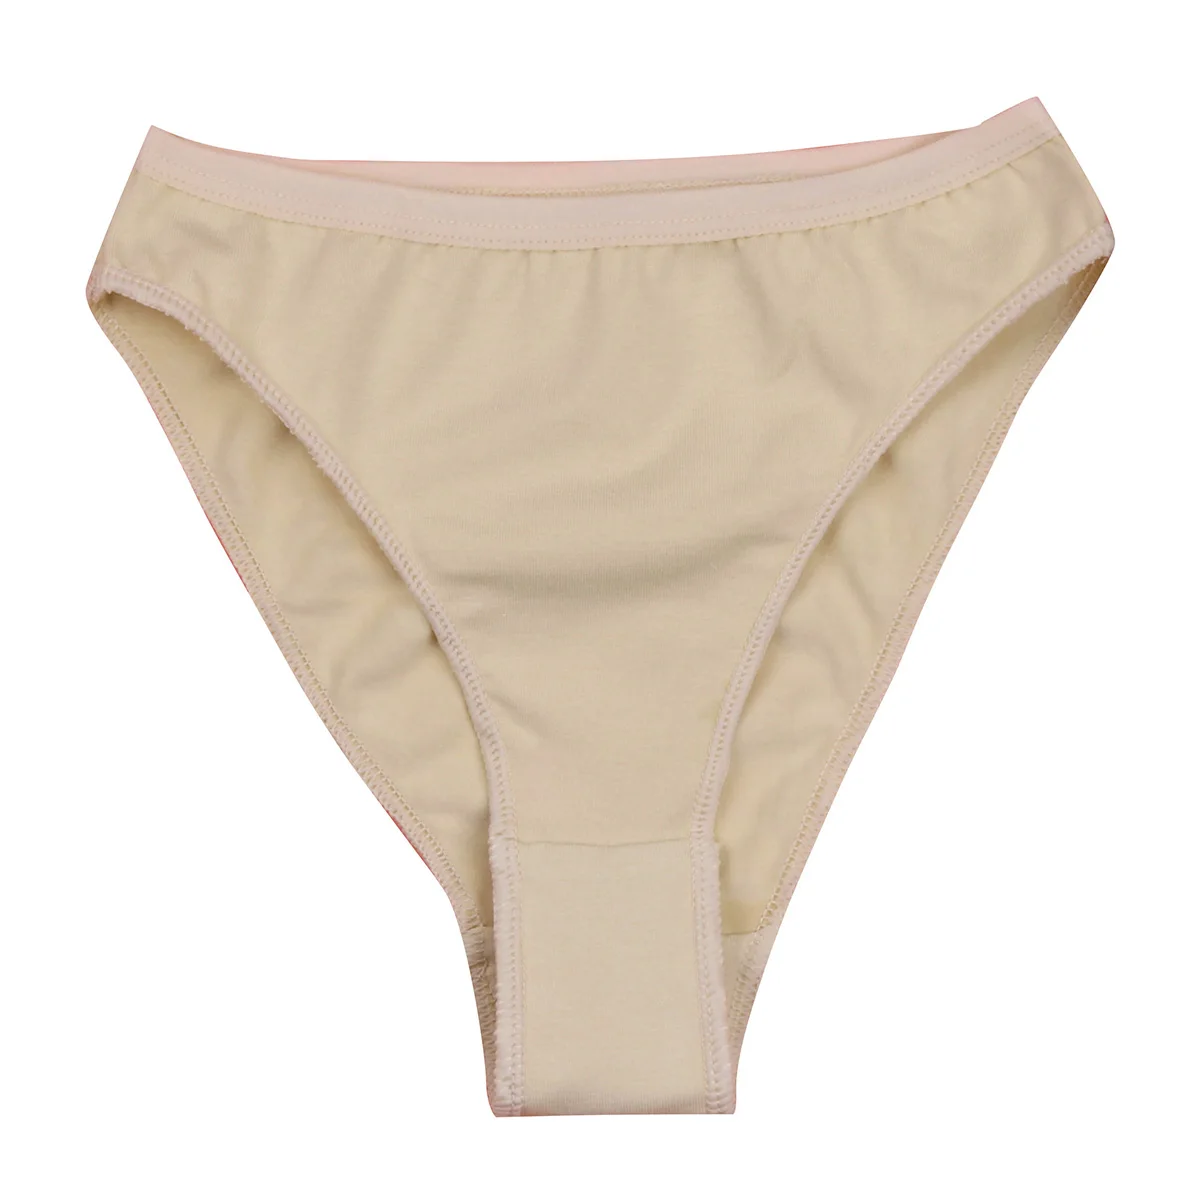 

Kids High Cut Ballet Dance Briefs Underwear Underpants Cute Girls Dance Gymnastics Bottom Ballerina Panties